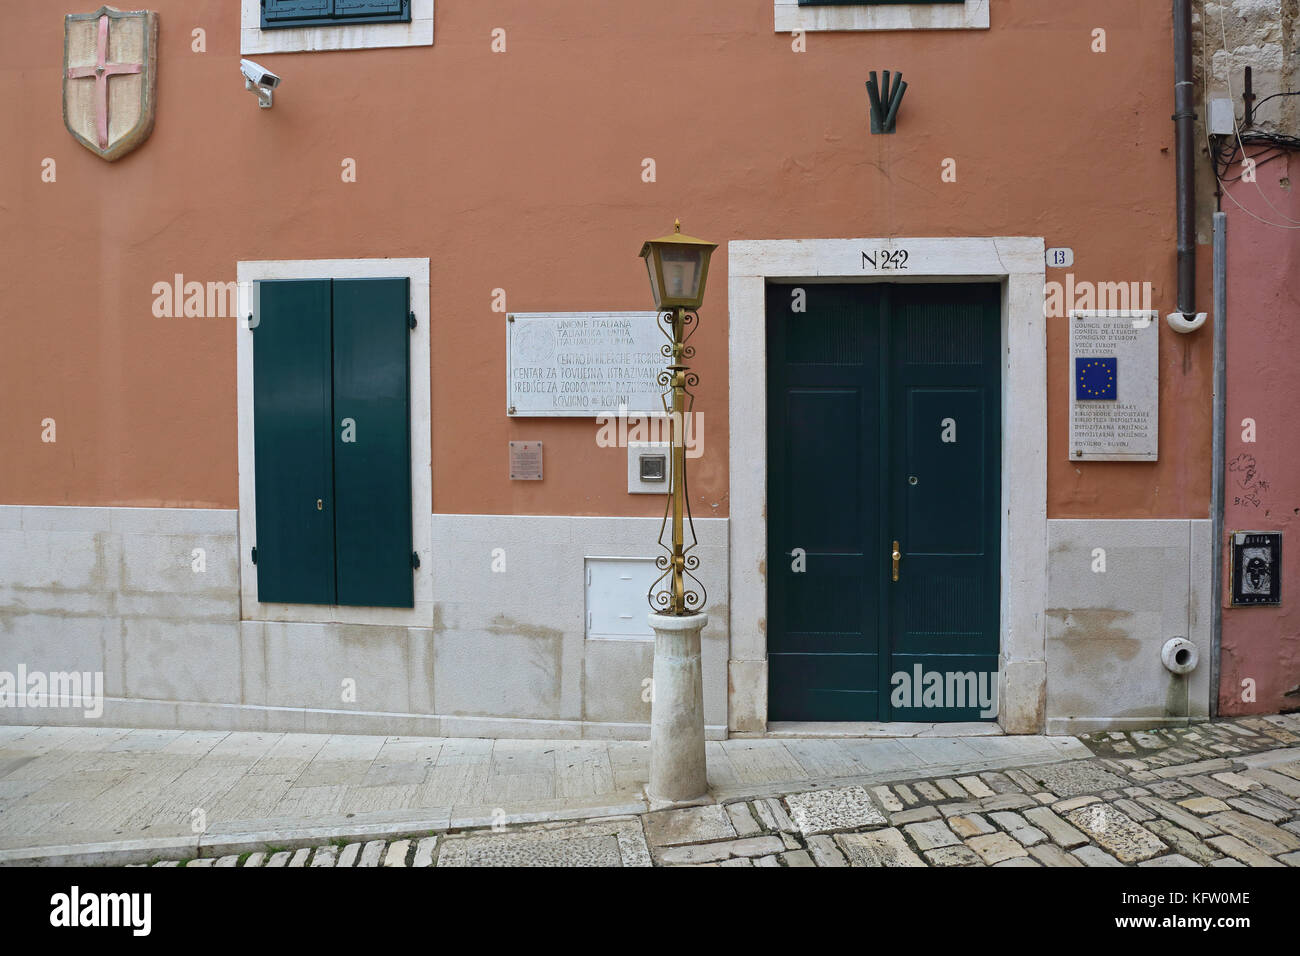 Rovinj, Kroatien - 15. Oktober: Historische Forschungsstelle italienische Union in Rovinj am 15. Oktober 2014. des Europarats und der verwahrstelle Bibliothek gesamtstaats Stockfoto